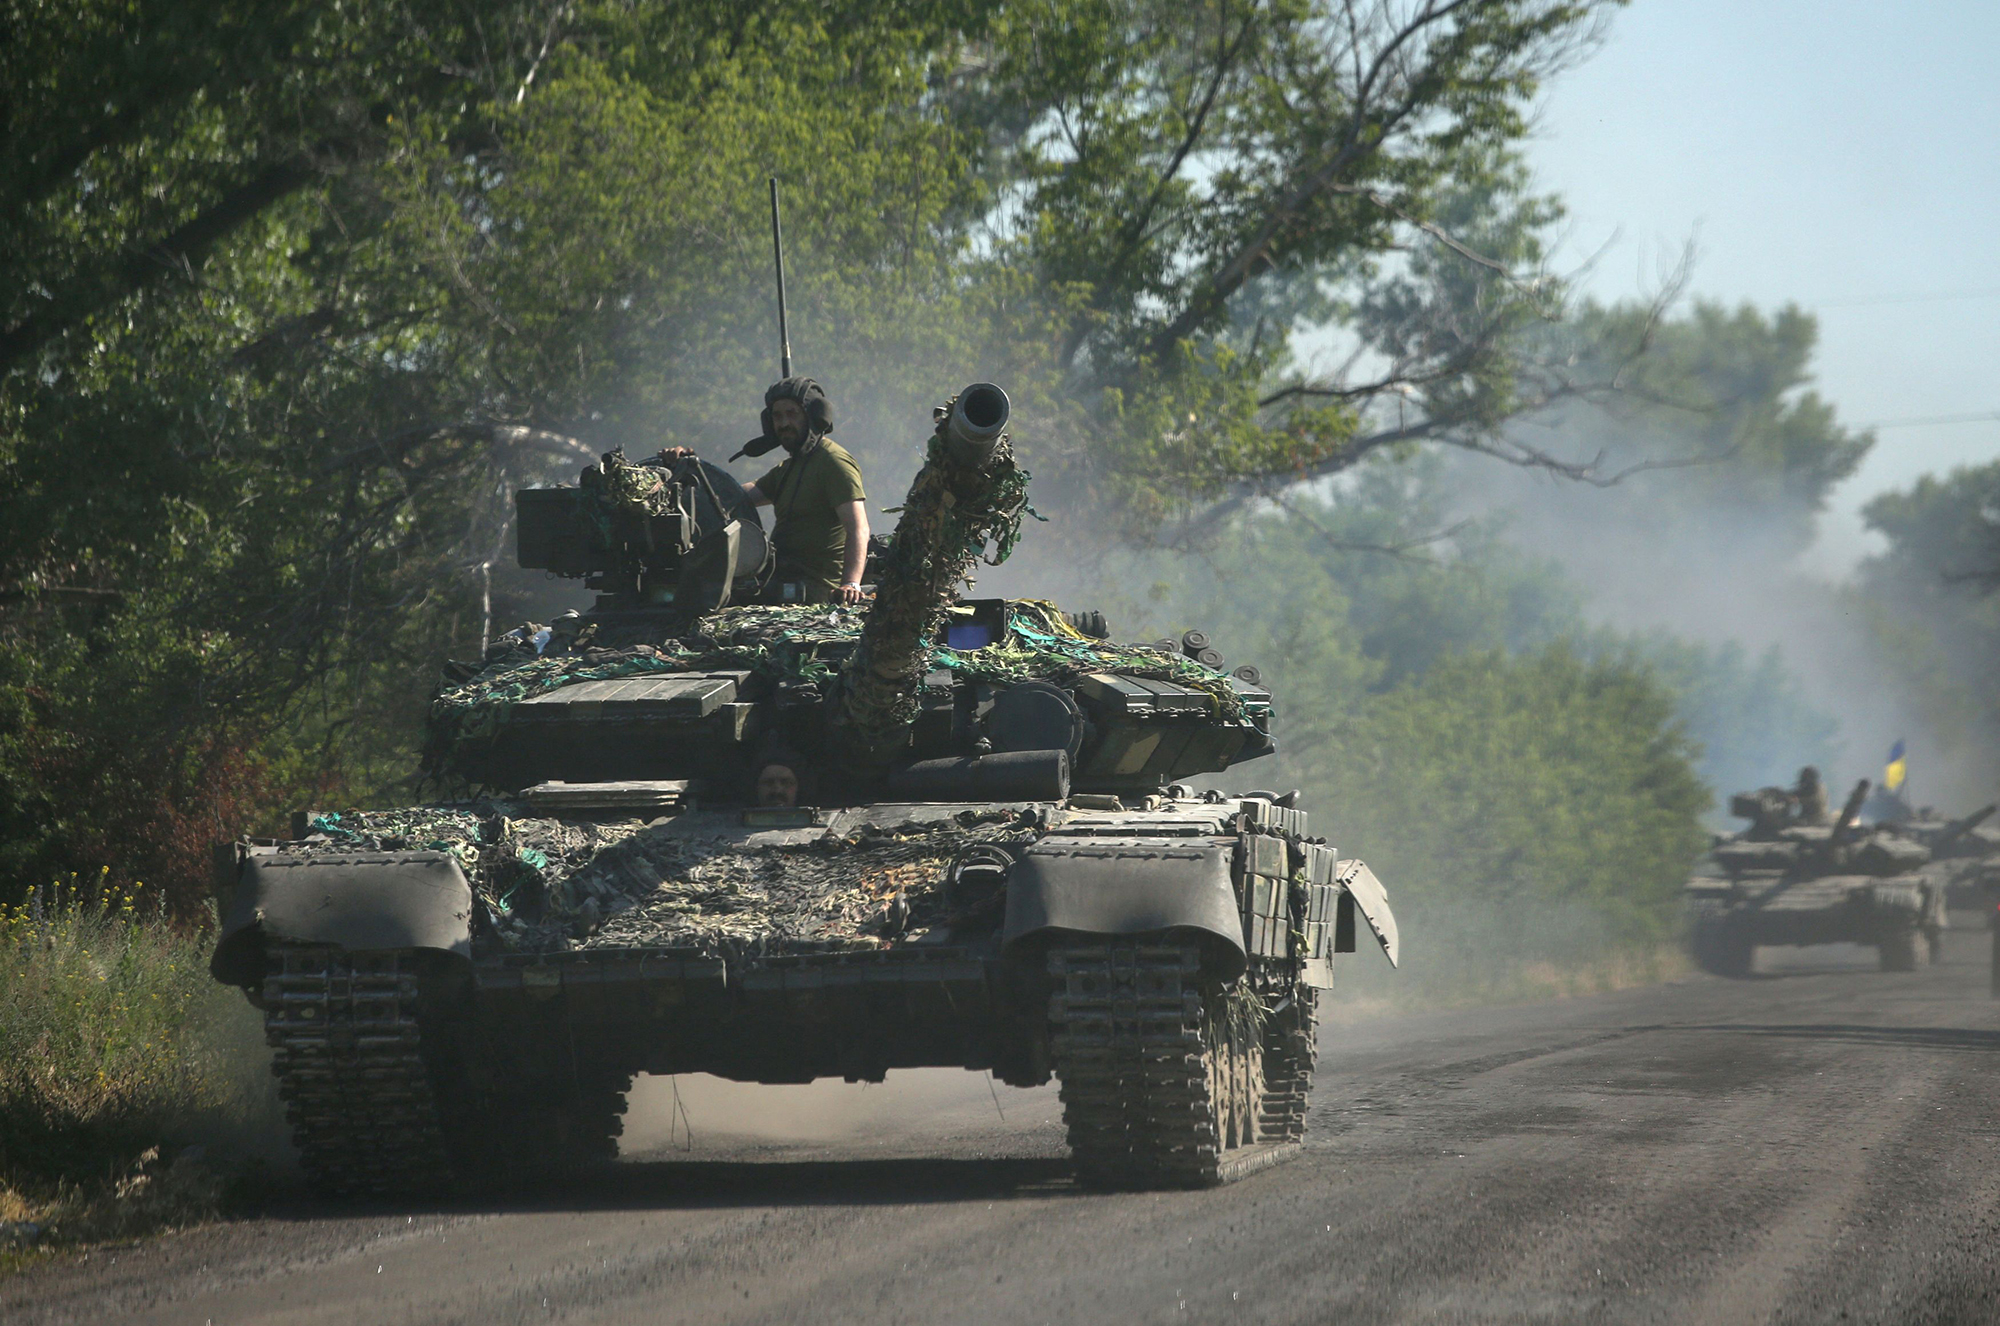 Oekraïense troepen vertrekken op 21 juni uit de oostelijke Oekraïense regio Donbas, zoals Oekraïne zegt dat Russische beschietingen hebben veroorzaakt "catastrofale vernietiging" in de oostelijke industriestad Lysychansk.